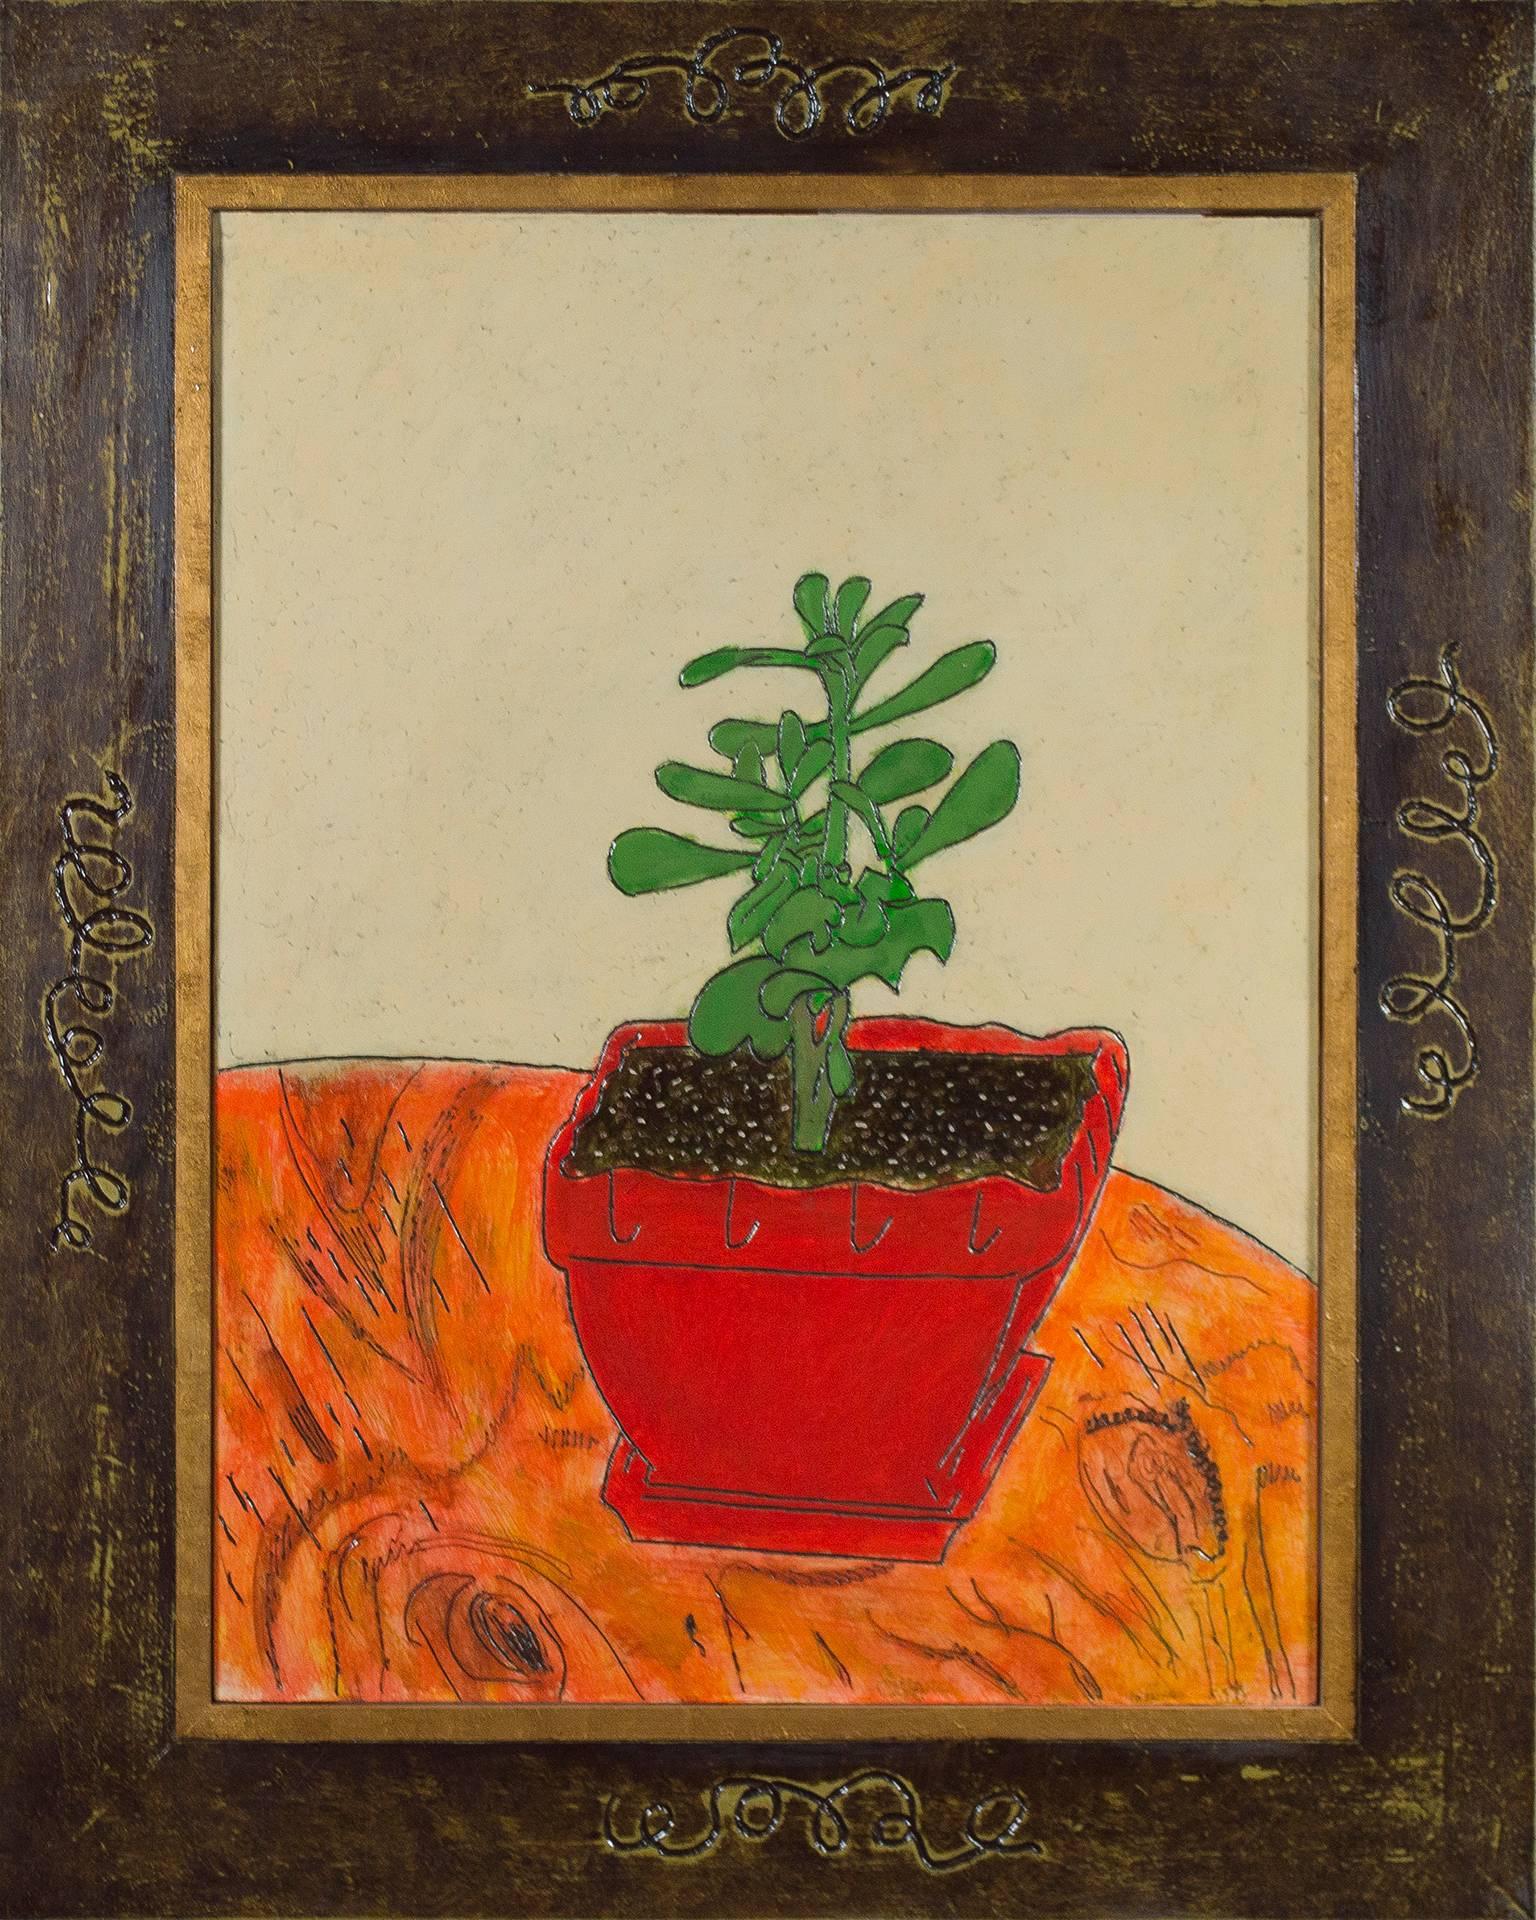 "Little Jade" ist ein Original-Ölgemälde auf Holz des Künstlers Robert Richter. Es zeigt eine kleine Jadepflanze in einem roten Übertopf. Der Künstler hat das Werk betitelt, datiert, mit seinen Initialen versehen und auf der Rückseite signiert. Das